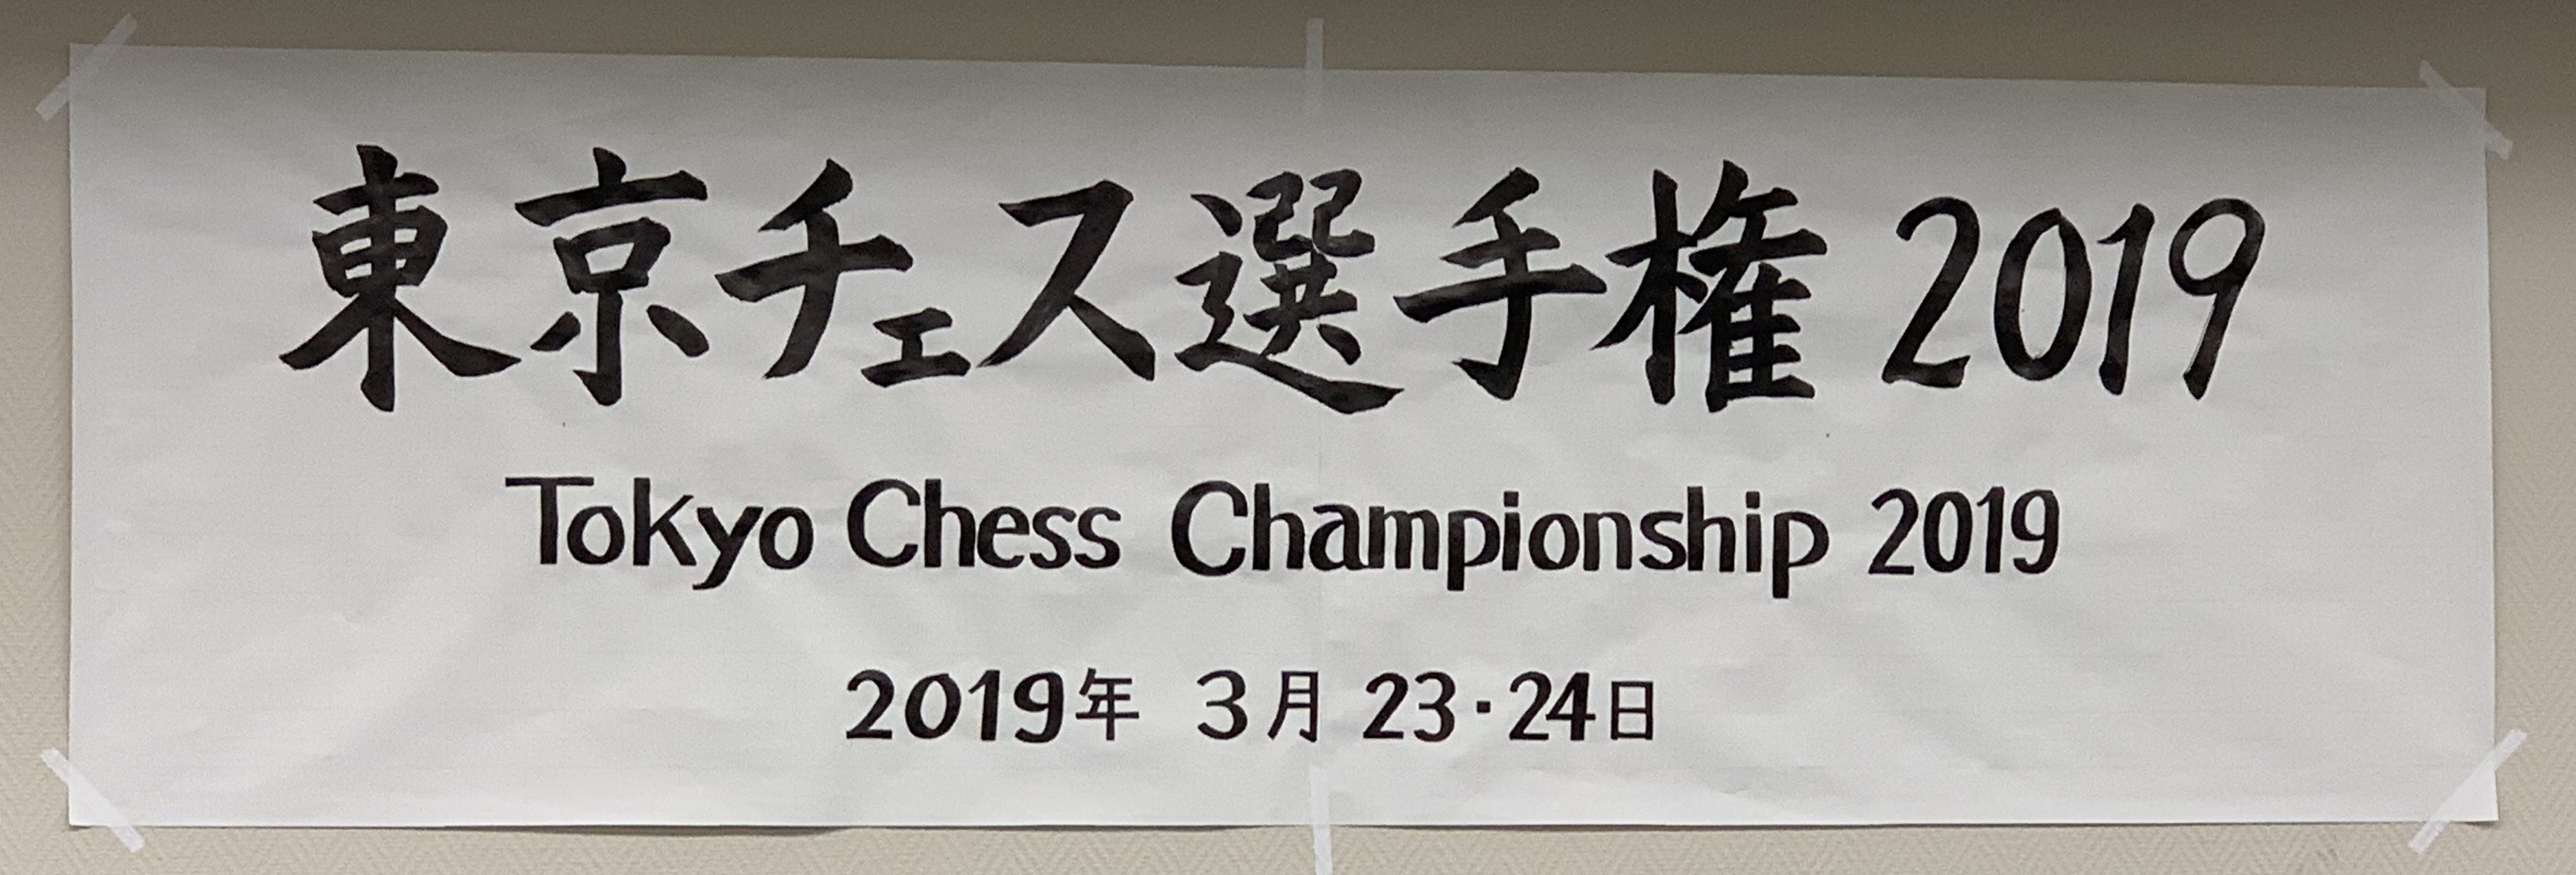 東京チェス選手権2019に参加しました